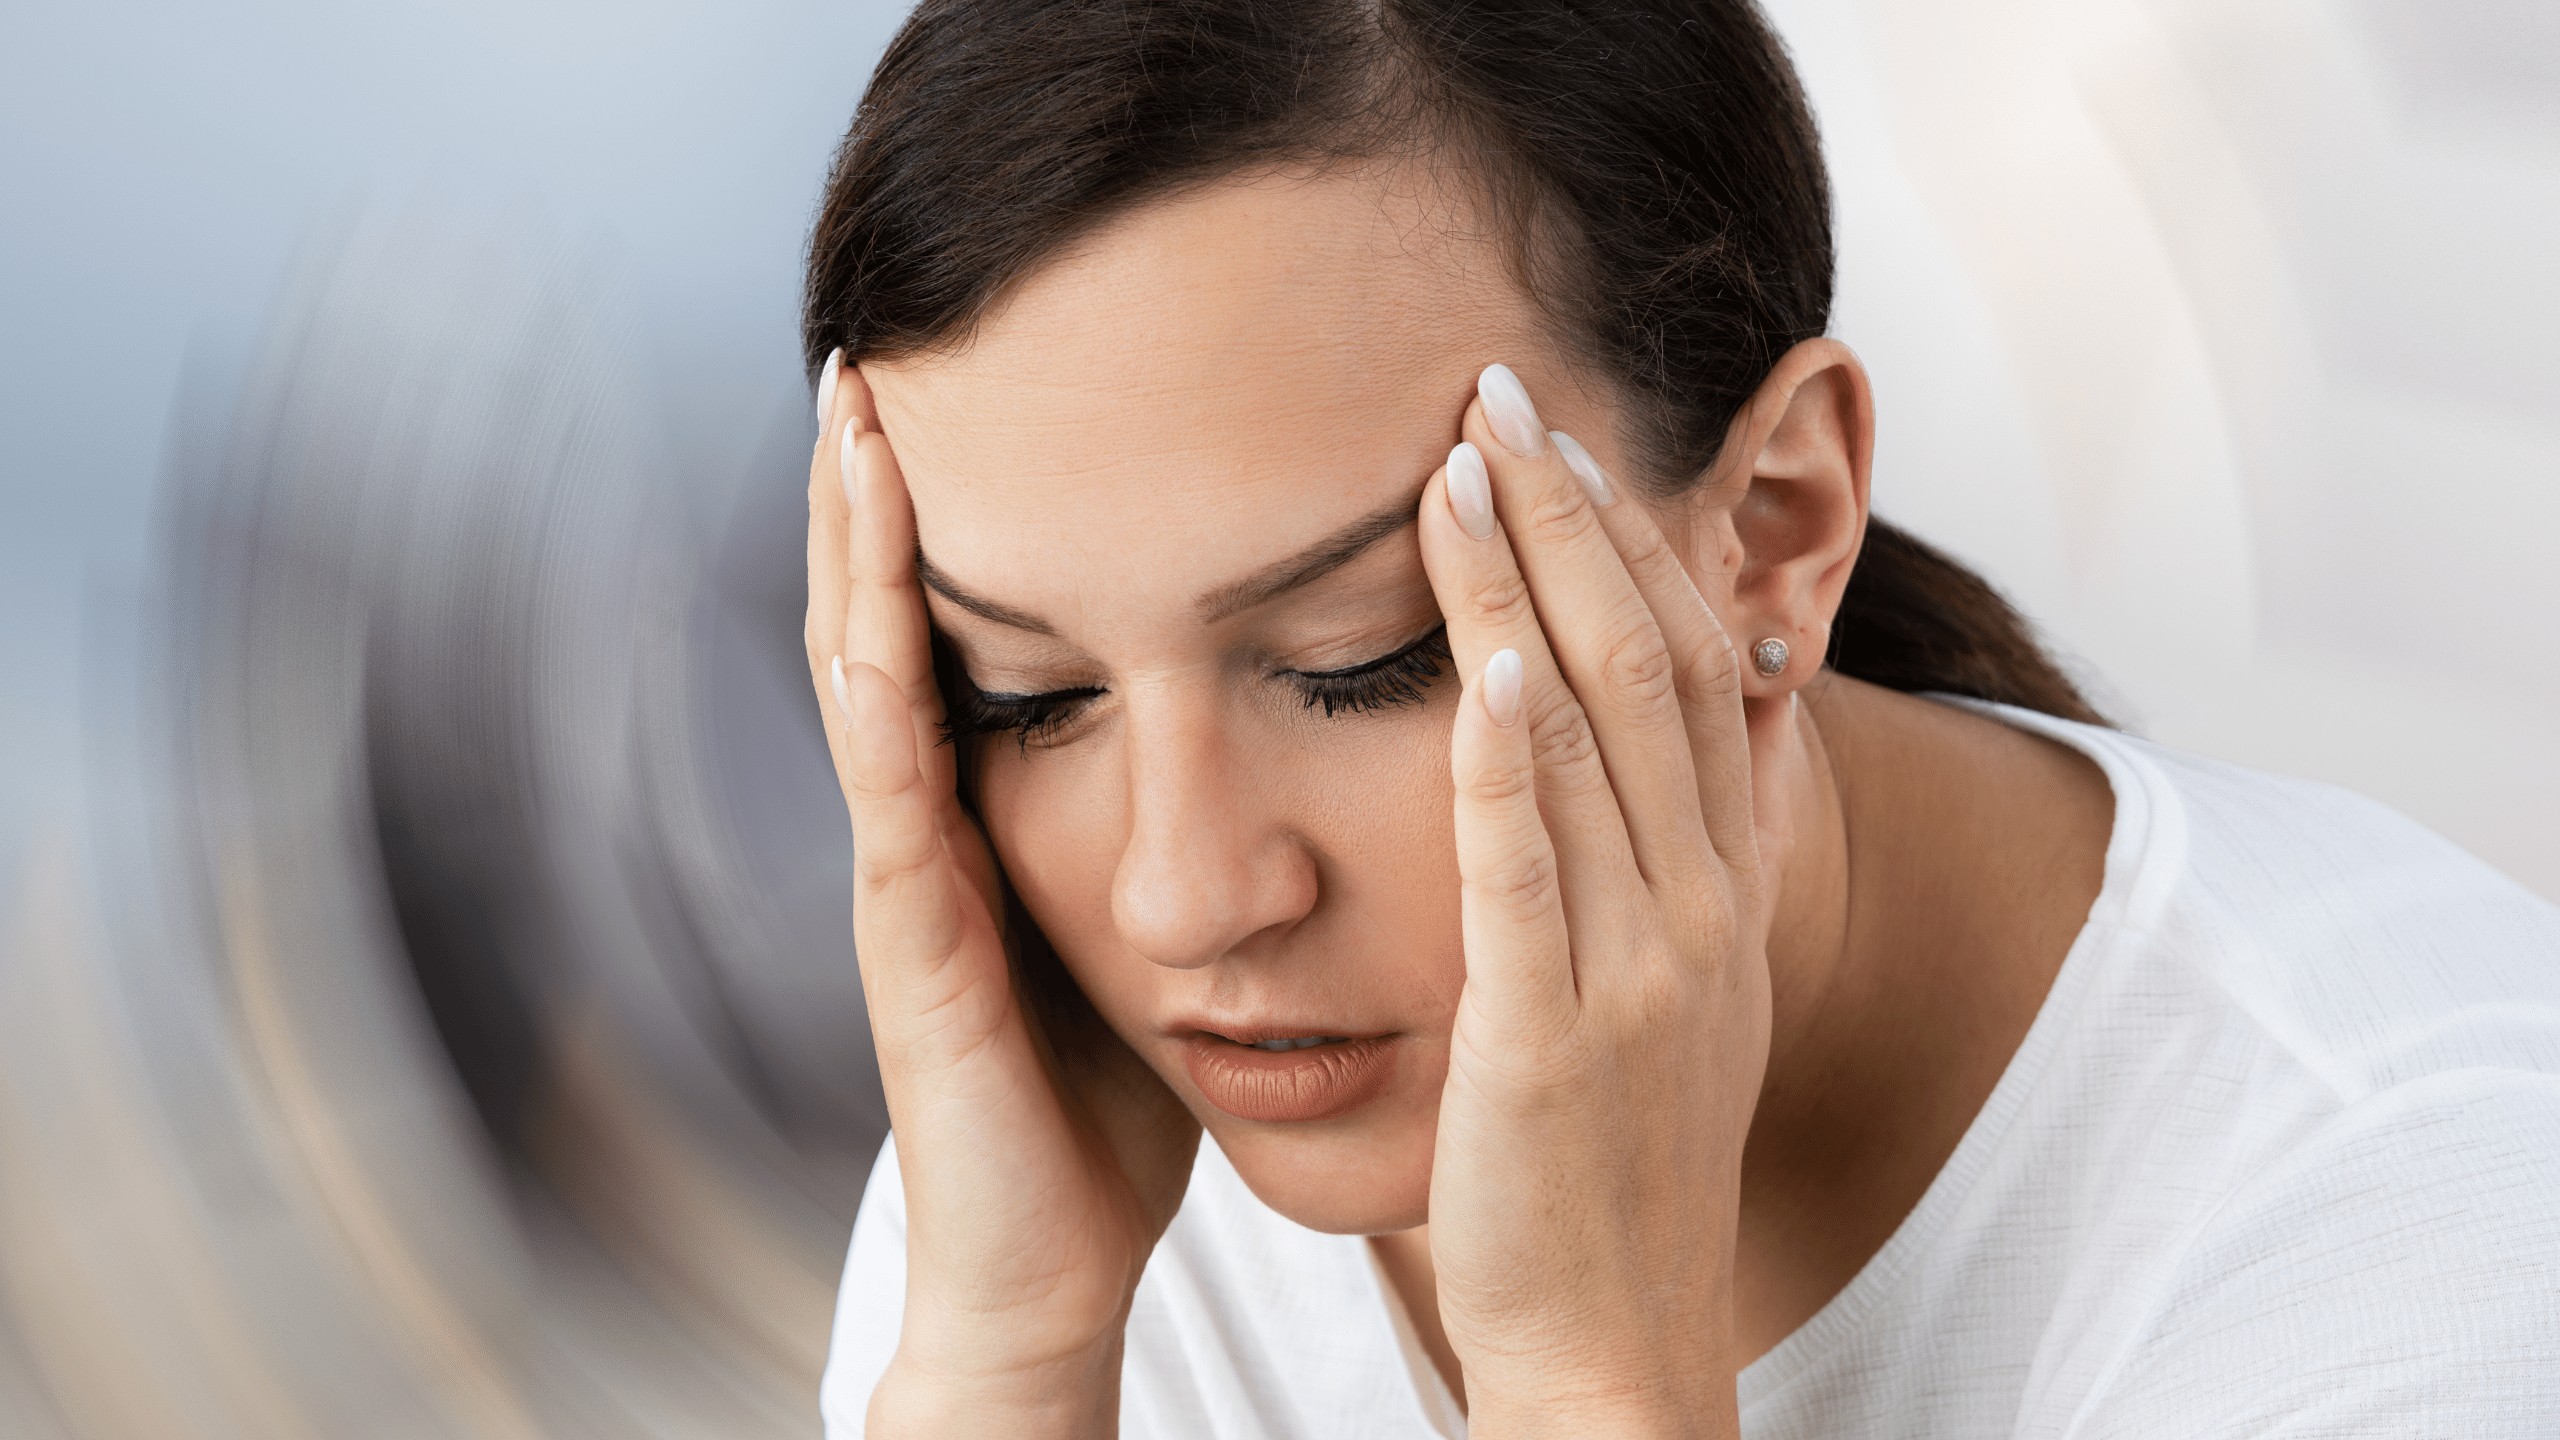 zawroty głowy: przyczyny, objawy i leczenie